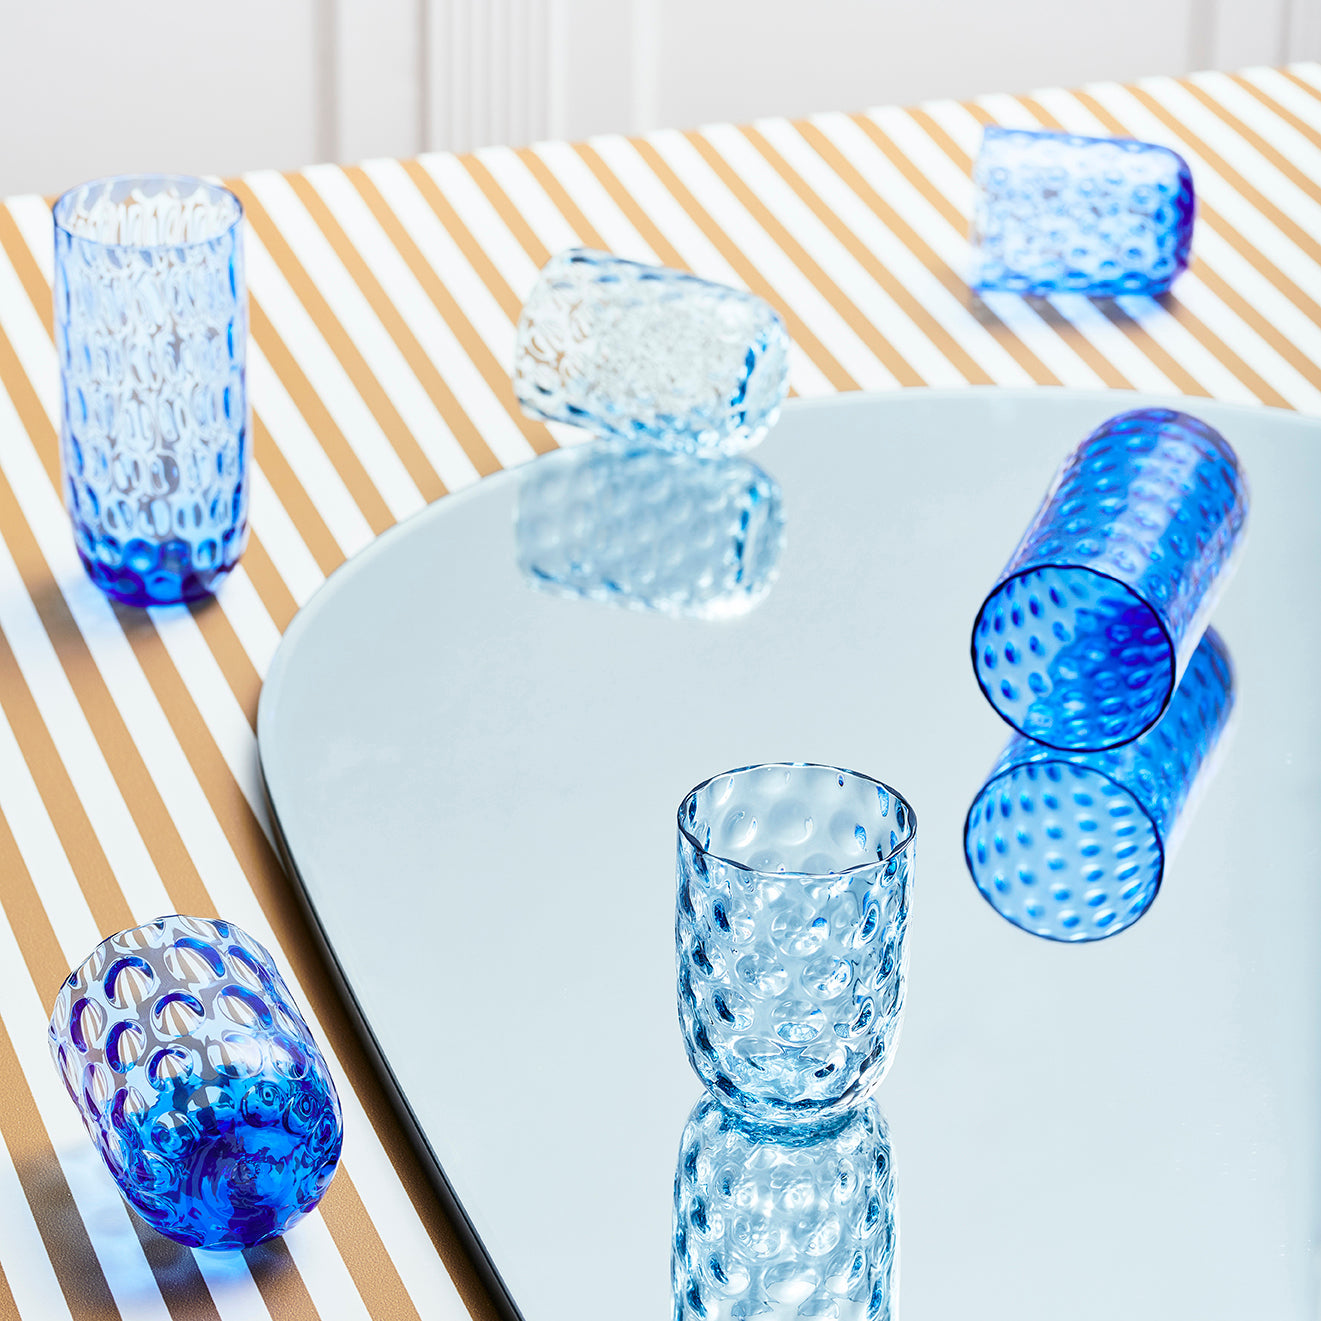 Kodanska Danish Summer Longdrink Water Glass Blue